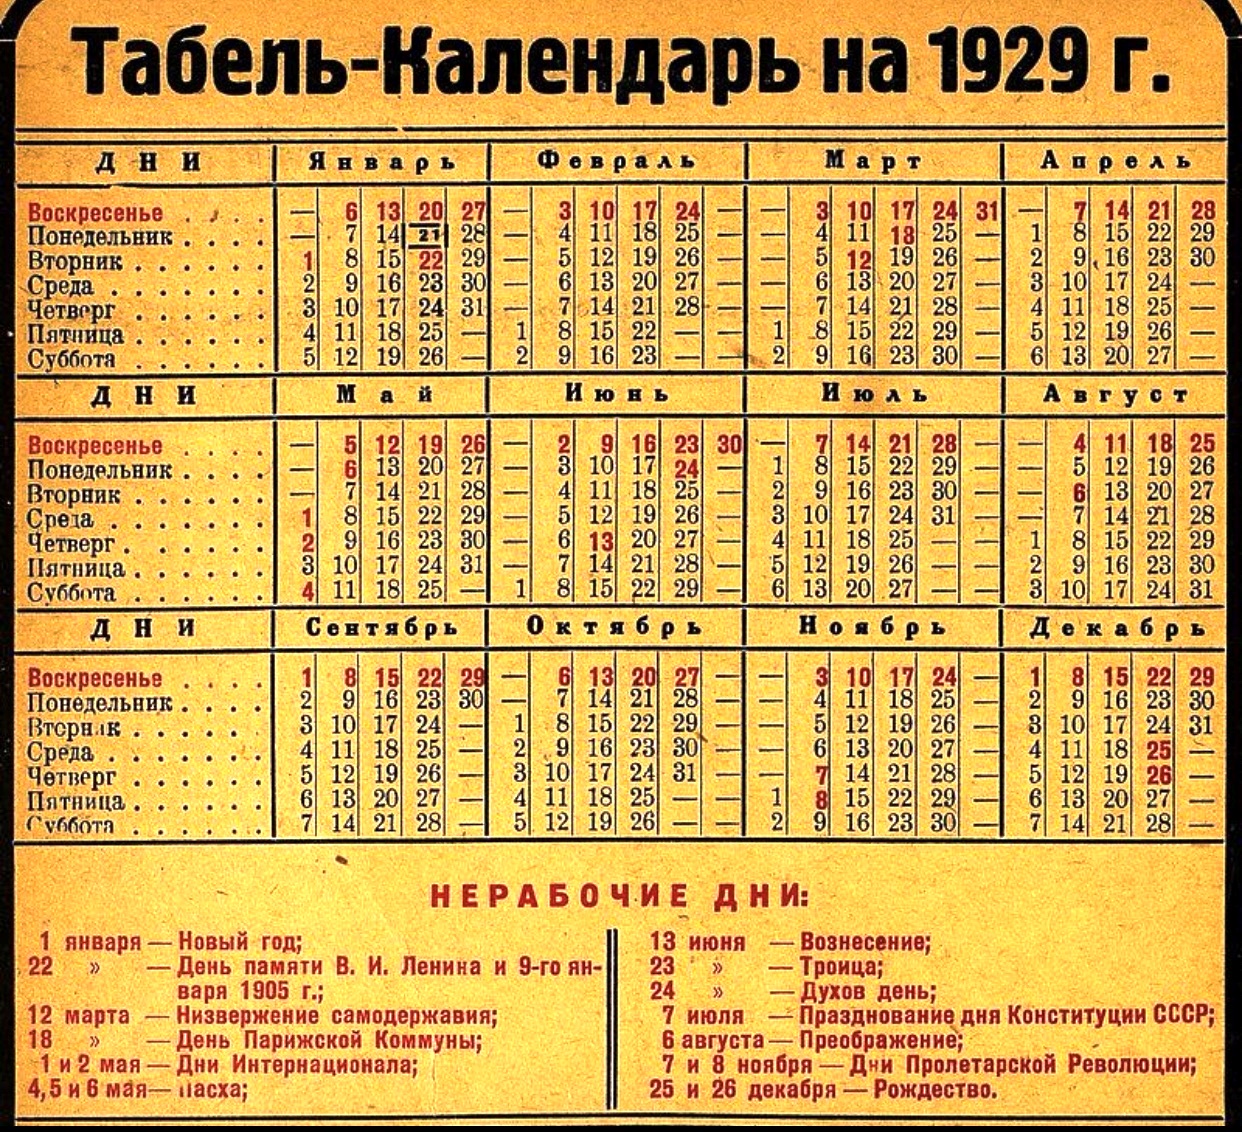 Табель-календарь на 1929 год